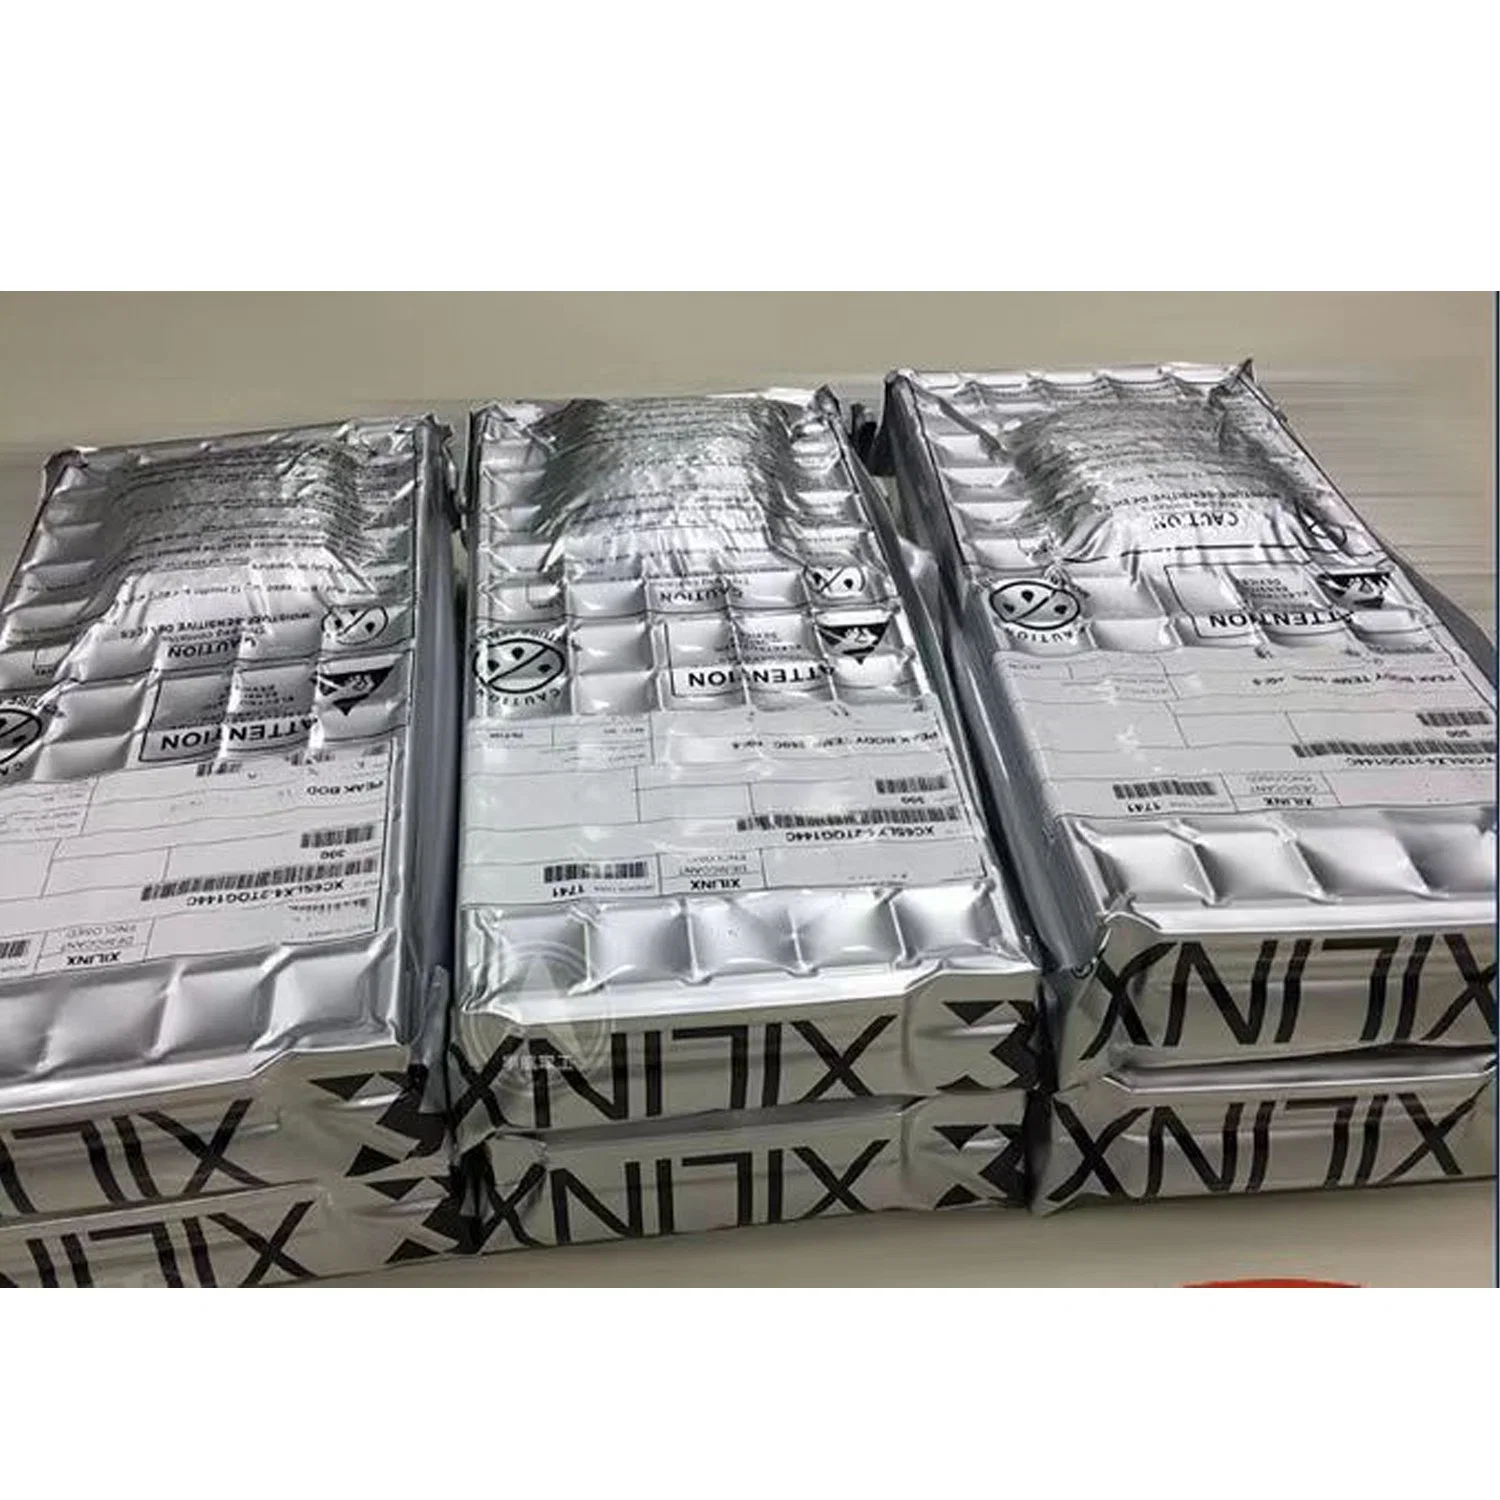 Xc6slx16-2РГС225I новых оригинальных электронных компонентов интегральные схемы для разработчиков Xilinx Epga спецификация материалов мы можем питания